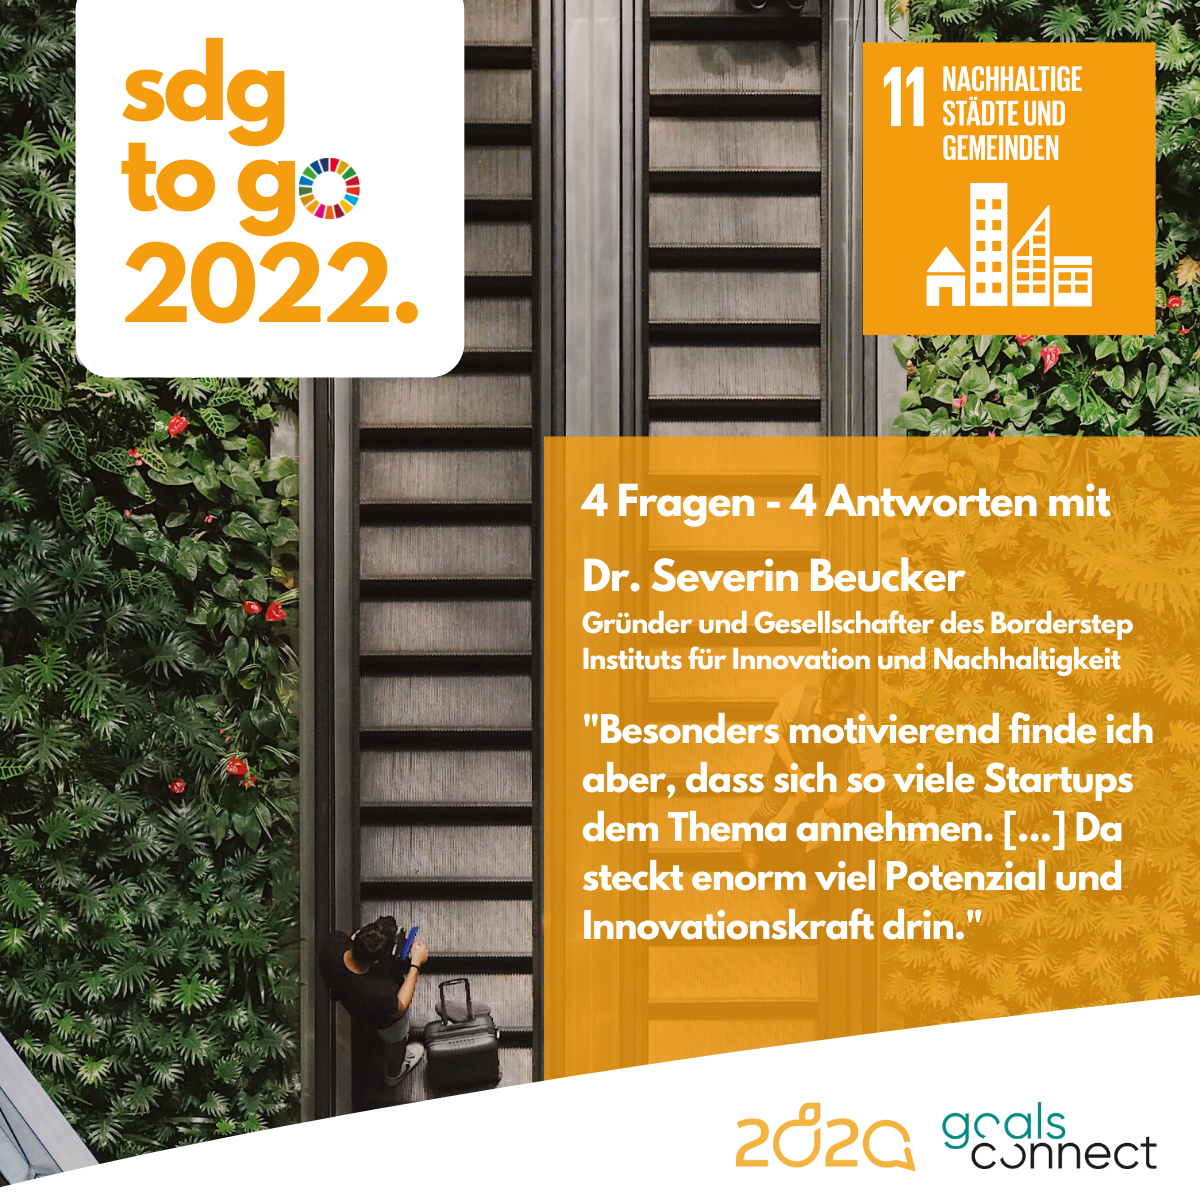 SDG to go – Heute: SDG 11 „Nachhaltige Städte und Gemeinden“